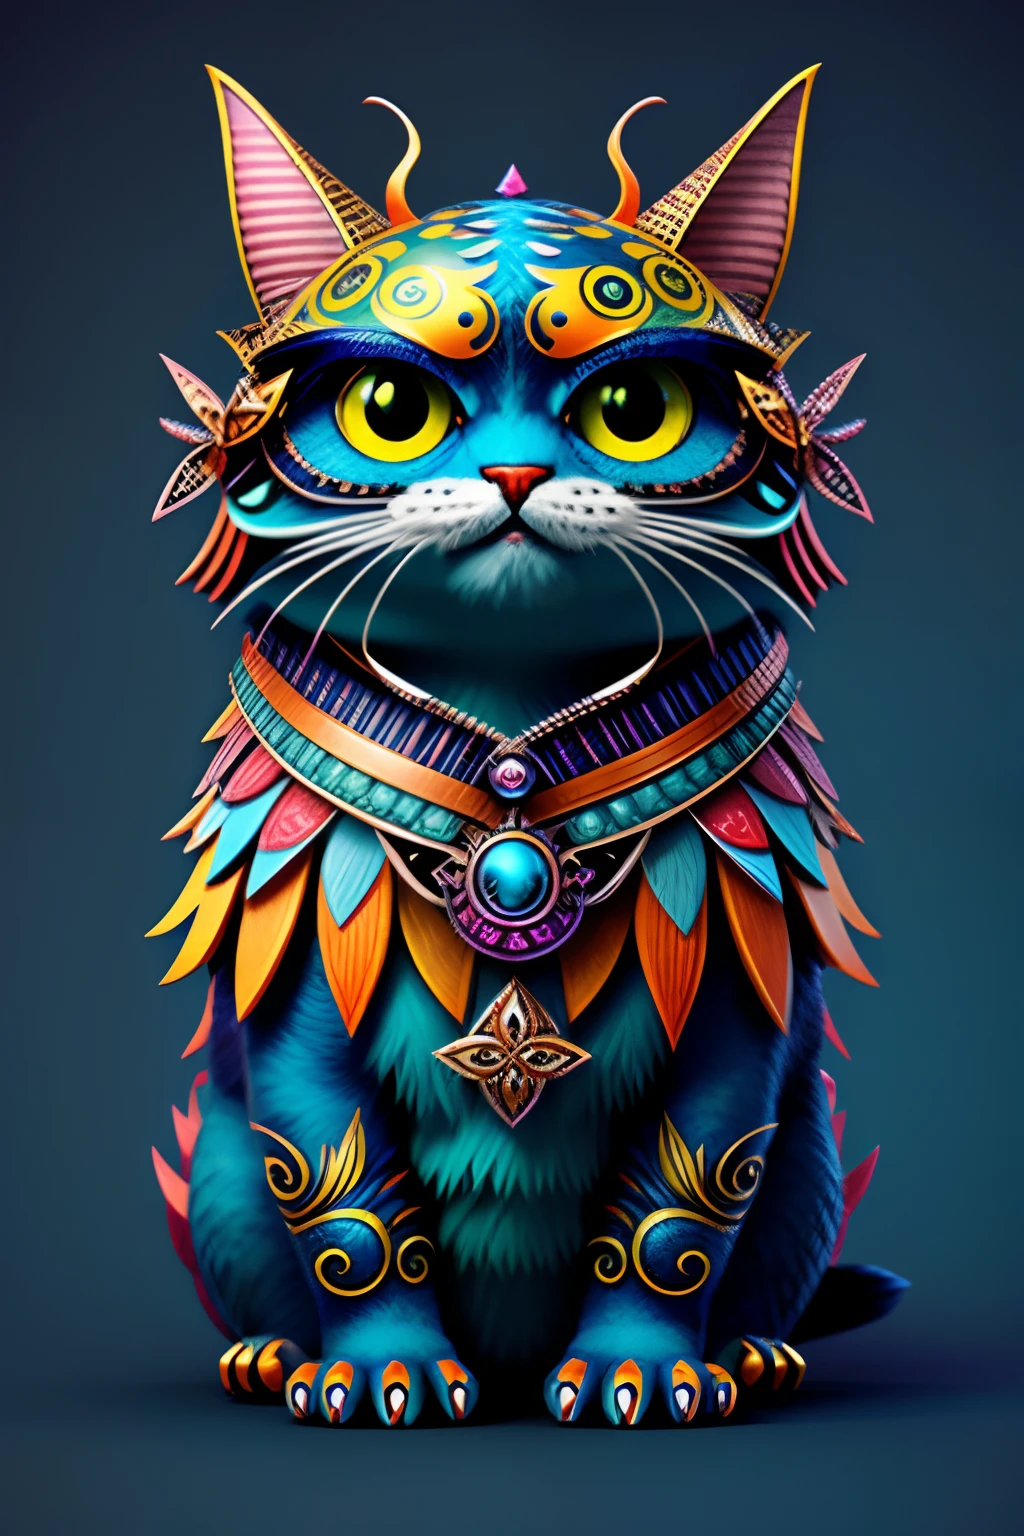 夢幻般的怪物設計, 有趣的, 超詳細, 可愛的, 蝴蝶, 風格-Sylvamagic貓,